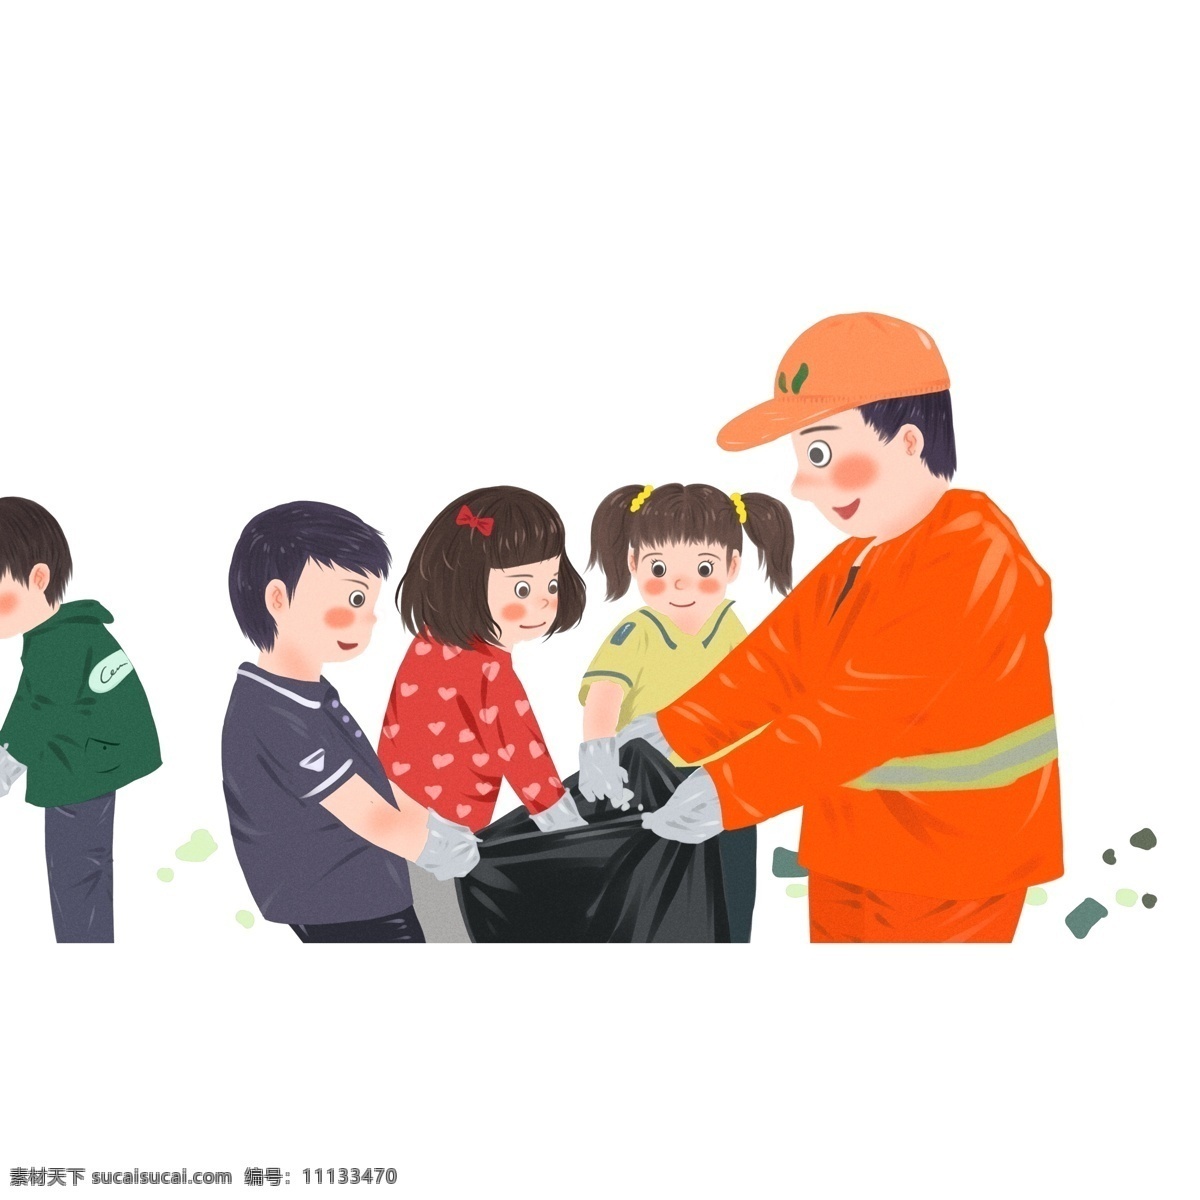 环卫 工人 一起 捡 垃圾 小孩 商用 元素 保护环境 插画 人物 卡通手绘 环卫工人